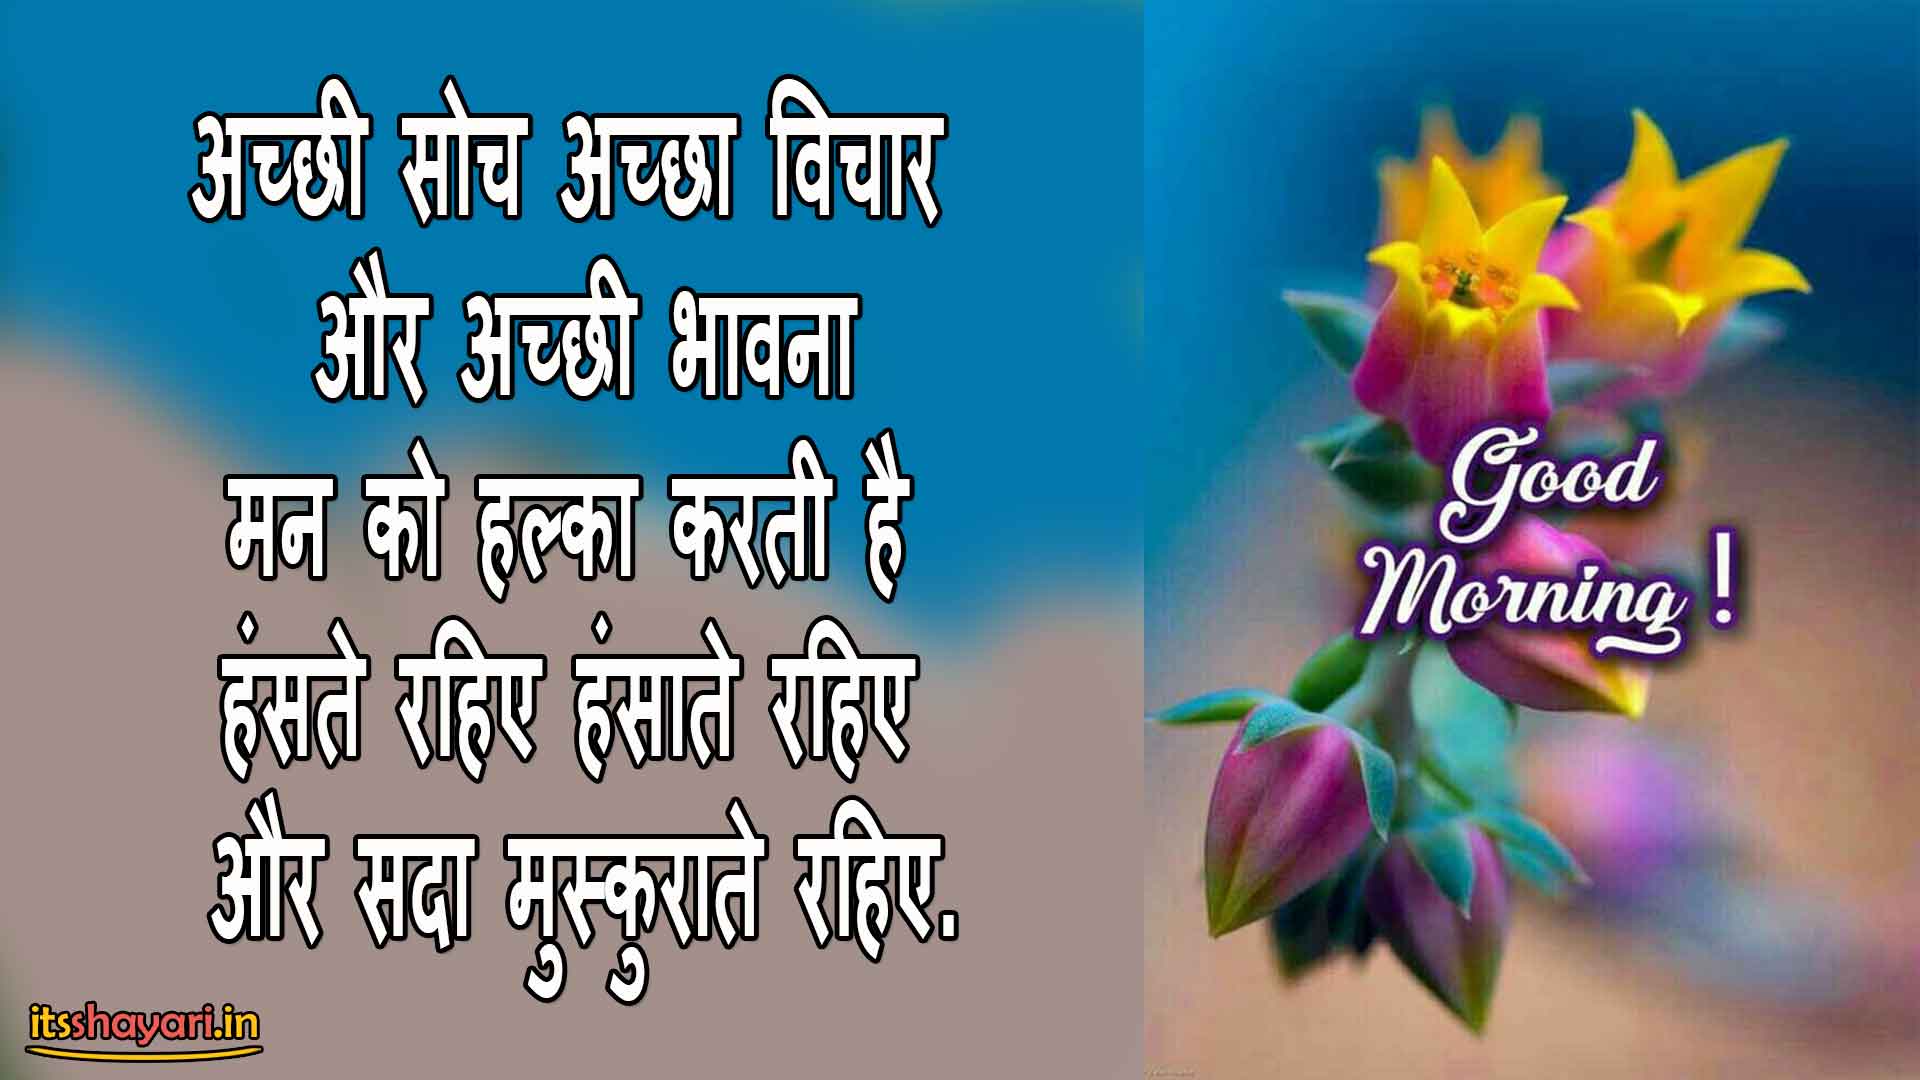 Good Morning Message Hindi